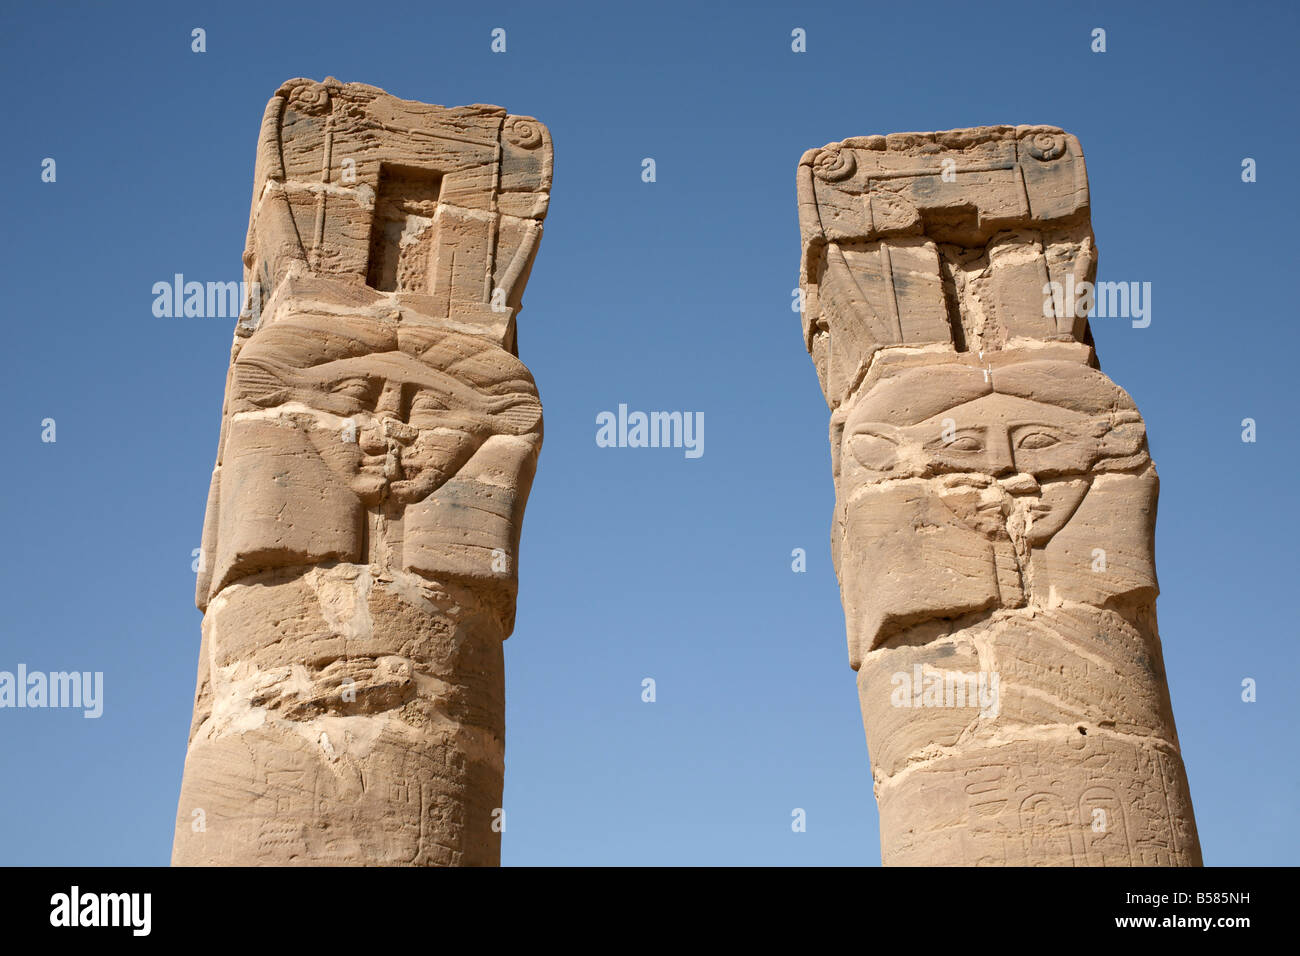 Colonne scolpite stand all'ingresso del tempio di Amon e la santa montagna di Gebel Barkal (Gebel Barkal), Karima, Sudan Foto Stock